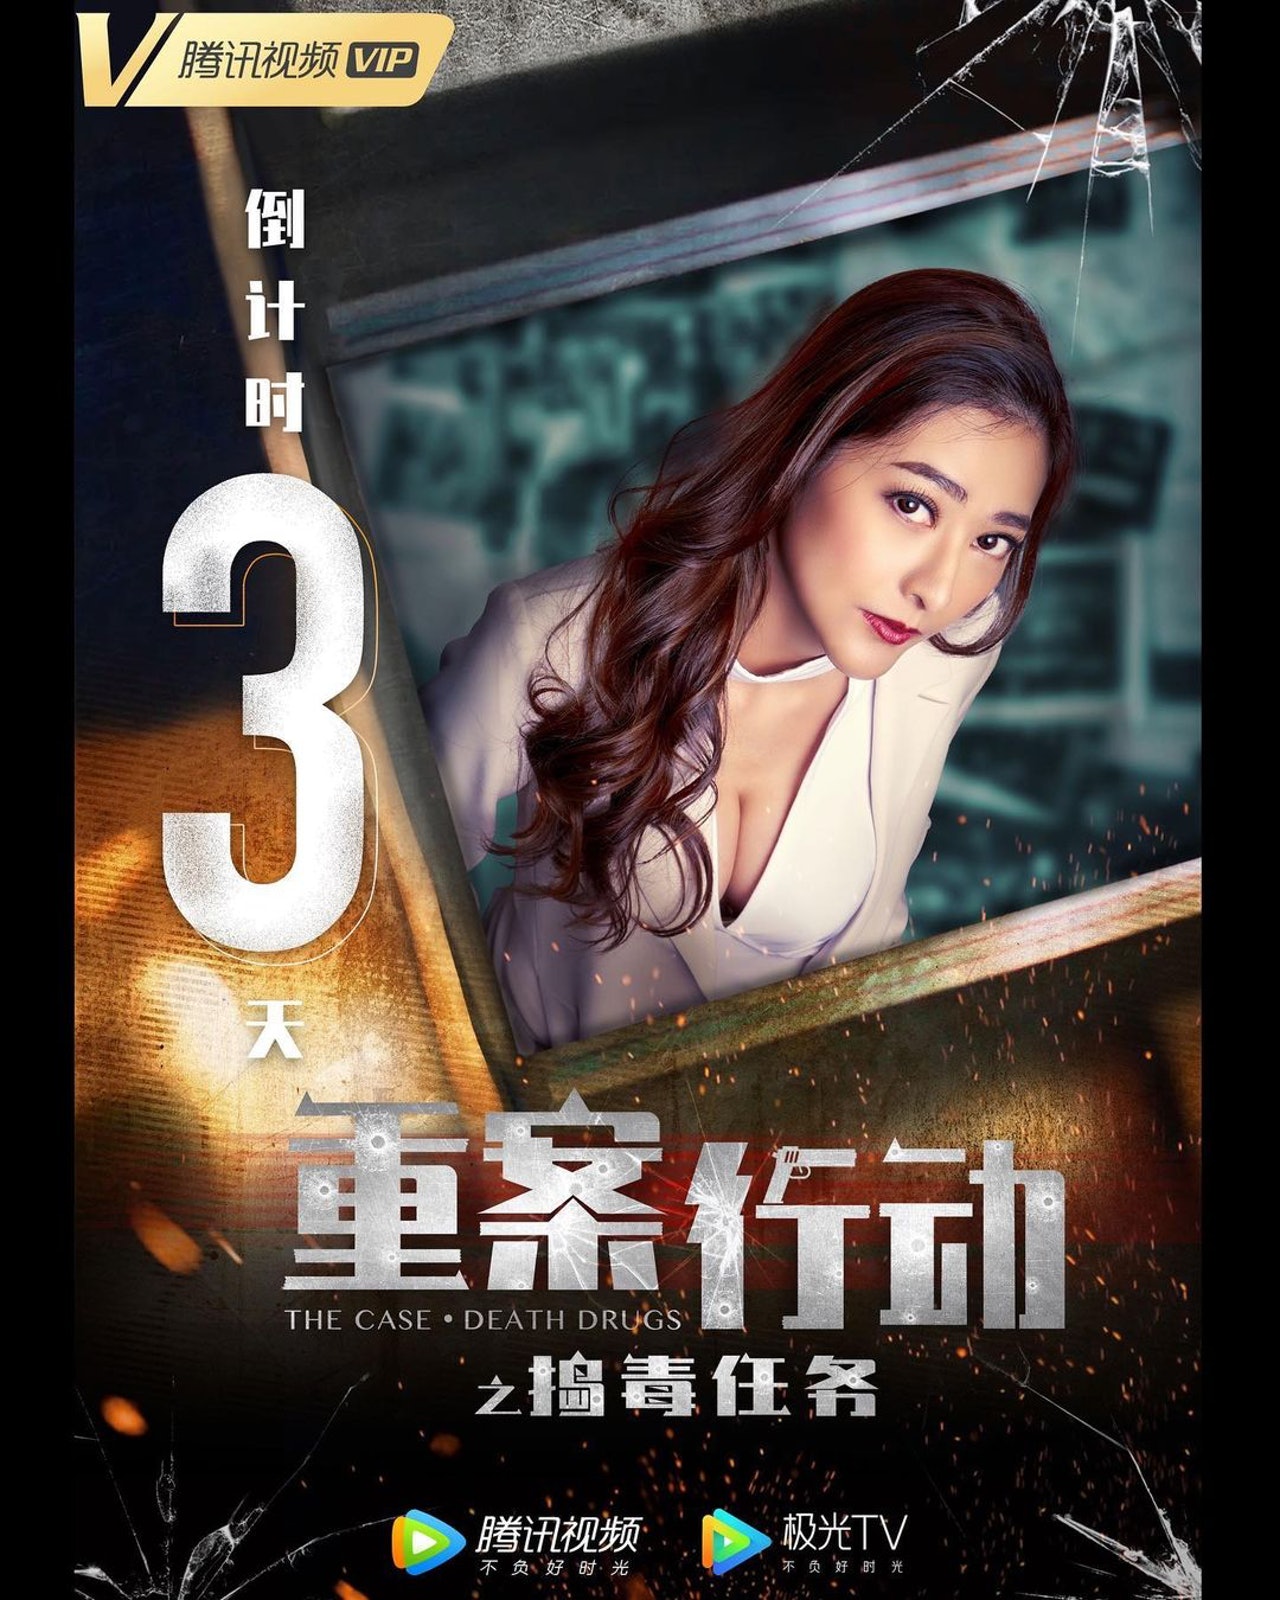 刘芷希在电影《重案行动之捣毒任务》当女主角。